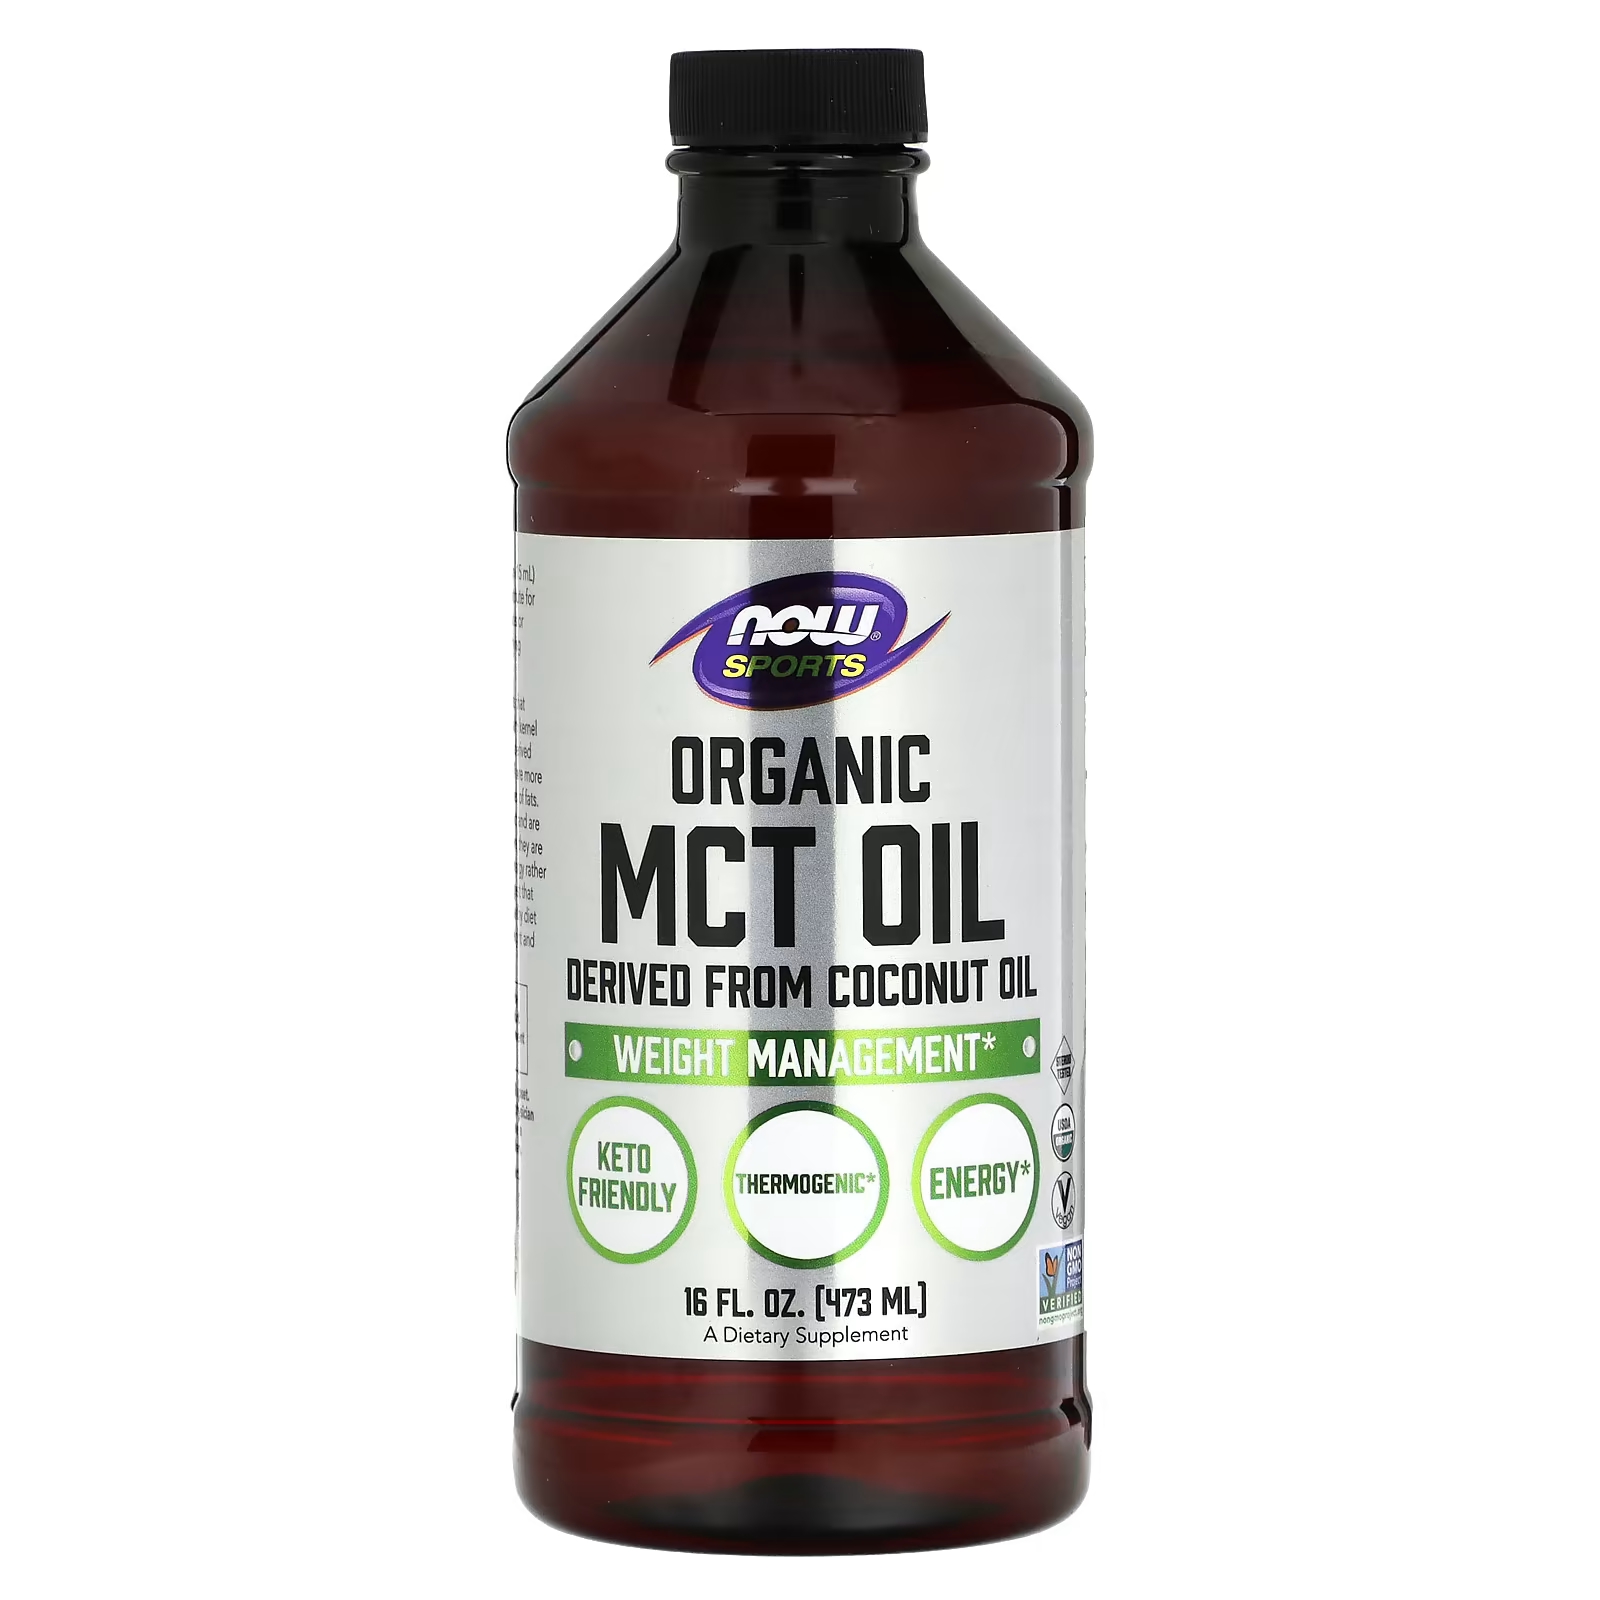 Органическое масло NOW Foods Sports MCT now foods sports органическое масло со среднецепочечным триглицеридом 32 ж унц 946 мл